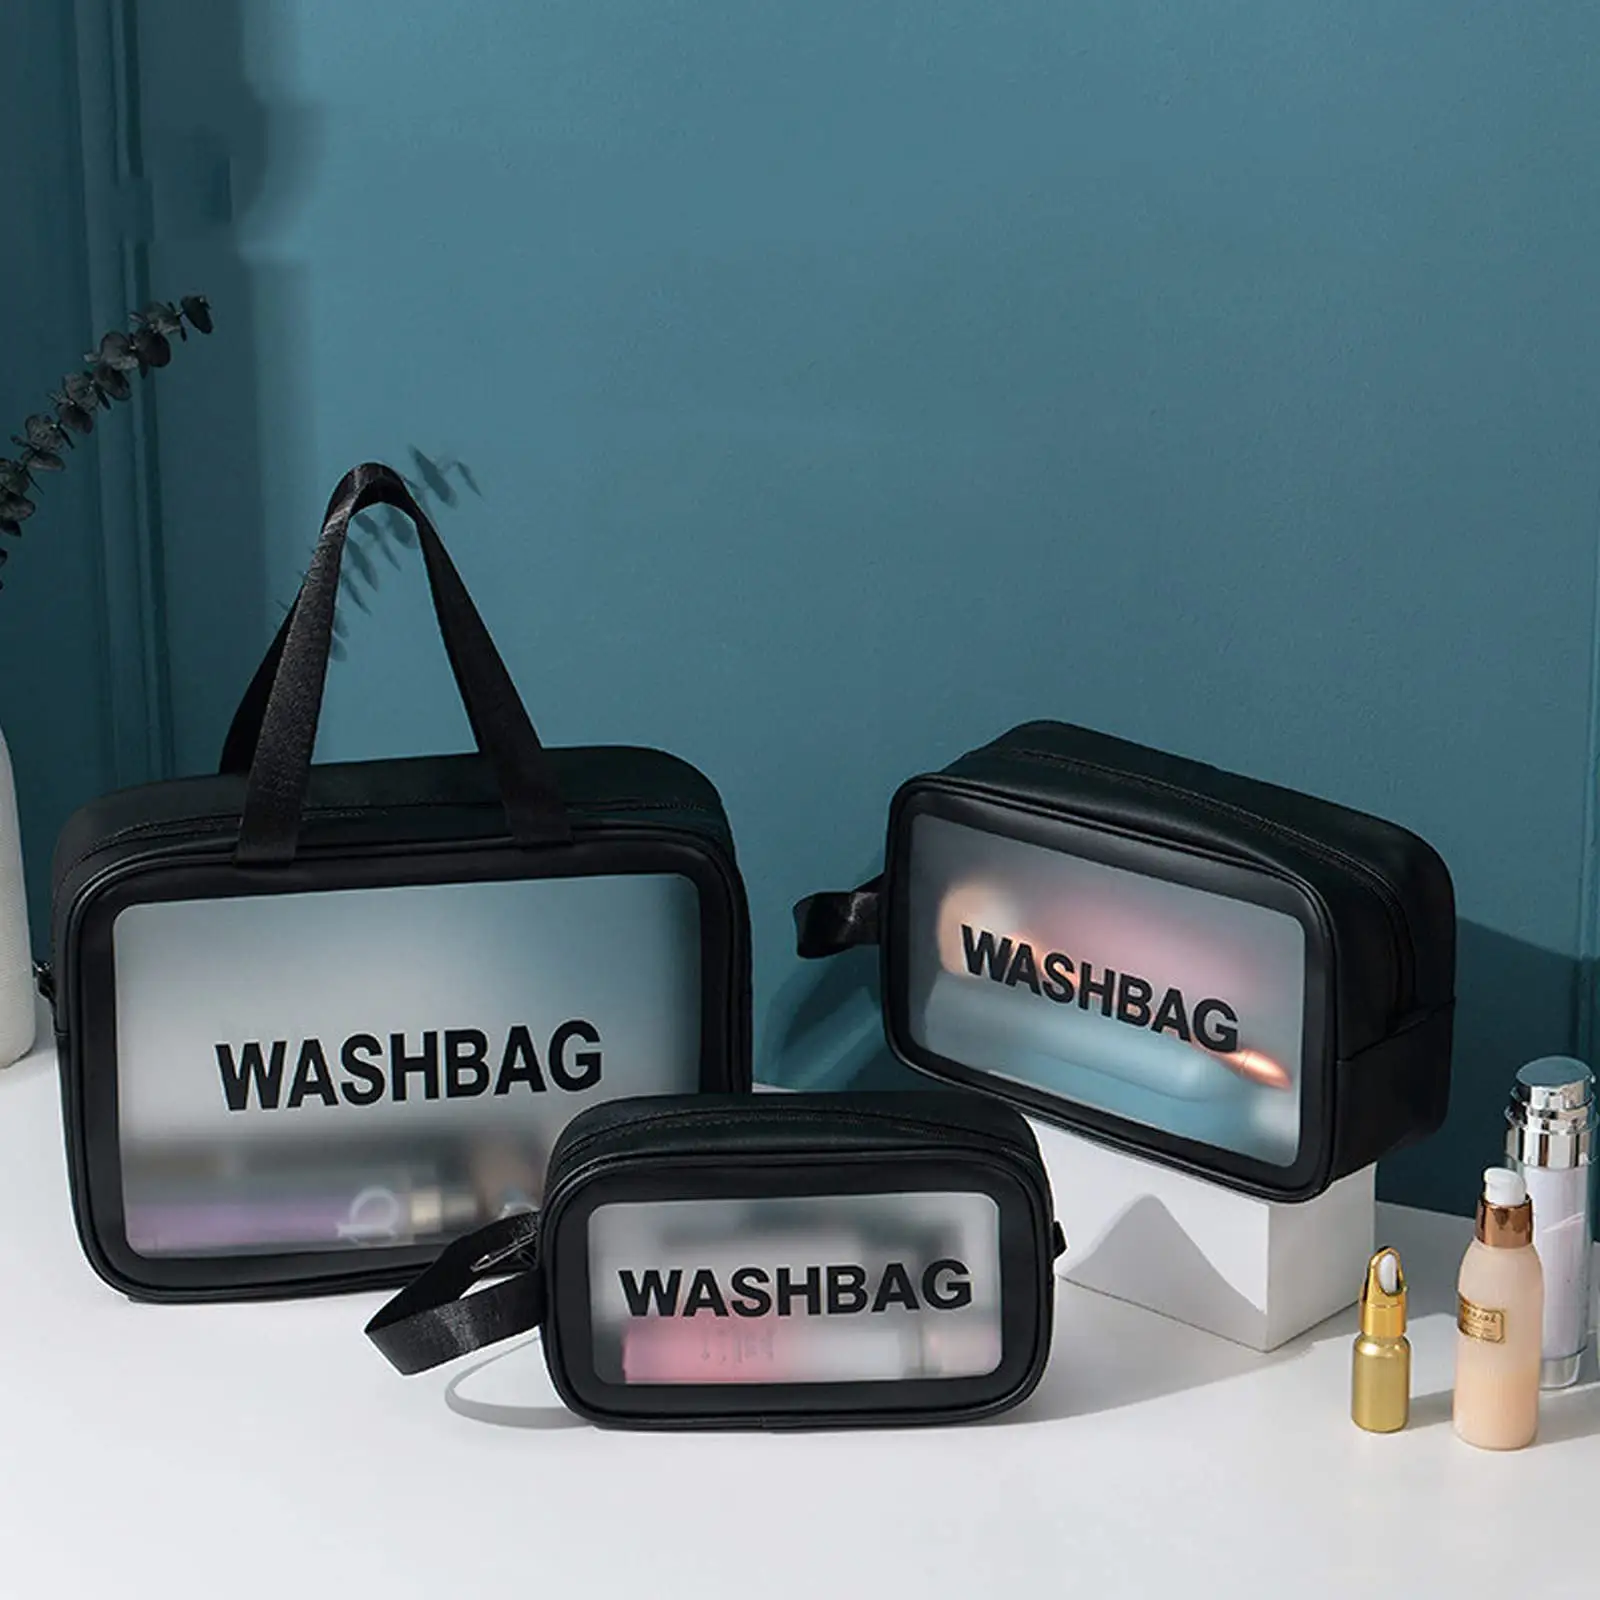 Regalo promozionale personalizzato Pvc trasparente impermeabile articoli da toeletta da viaggio custodia cosmetica con cerniera borsa trasparente borsa cosmetica